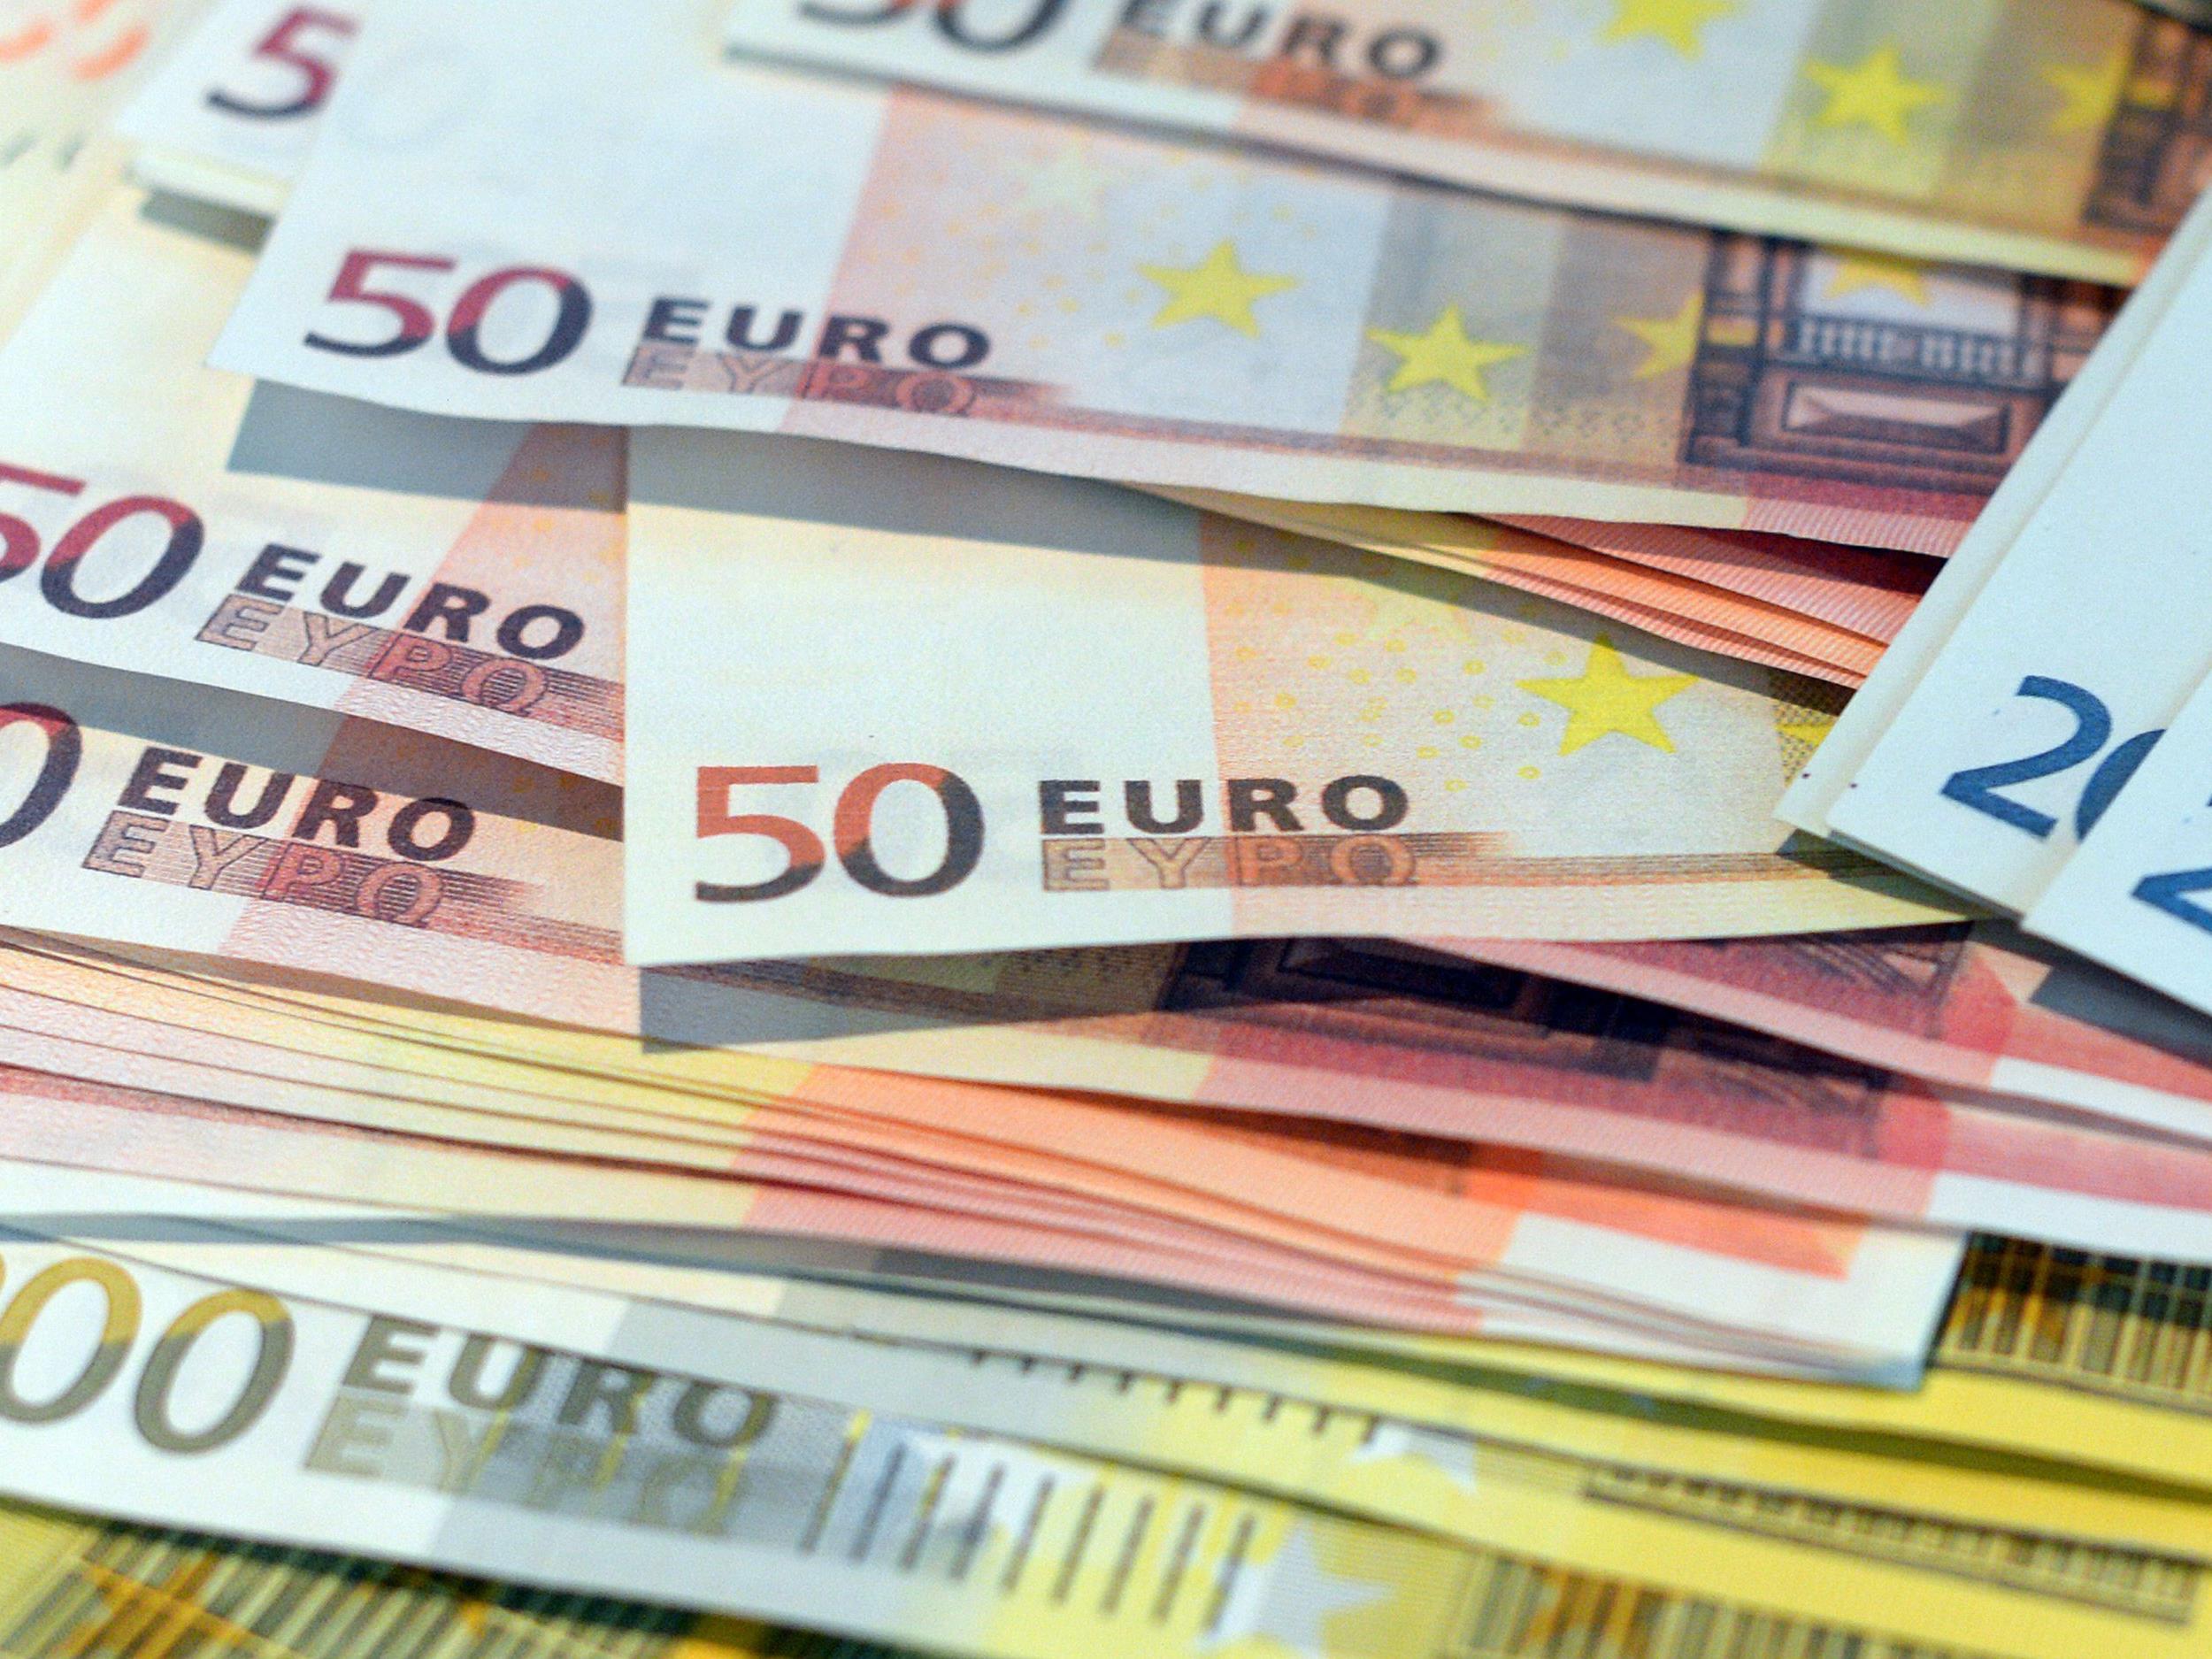 Die zweite Generation von EURO-Banknoten erhält mit dem 50-Euro-Schein ab 2017 Zuwachs